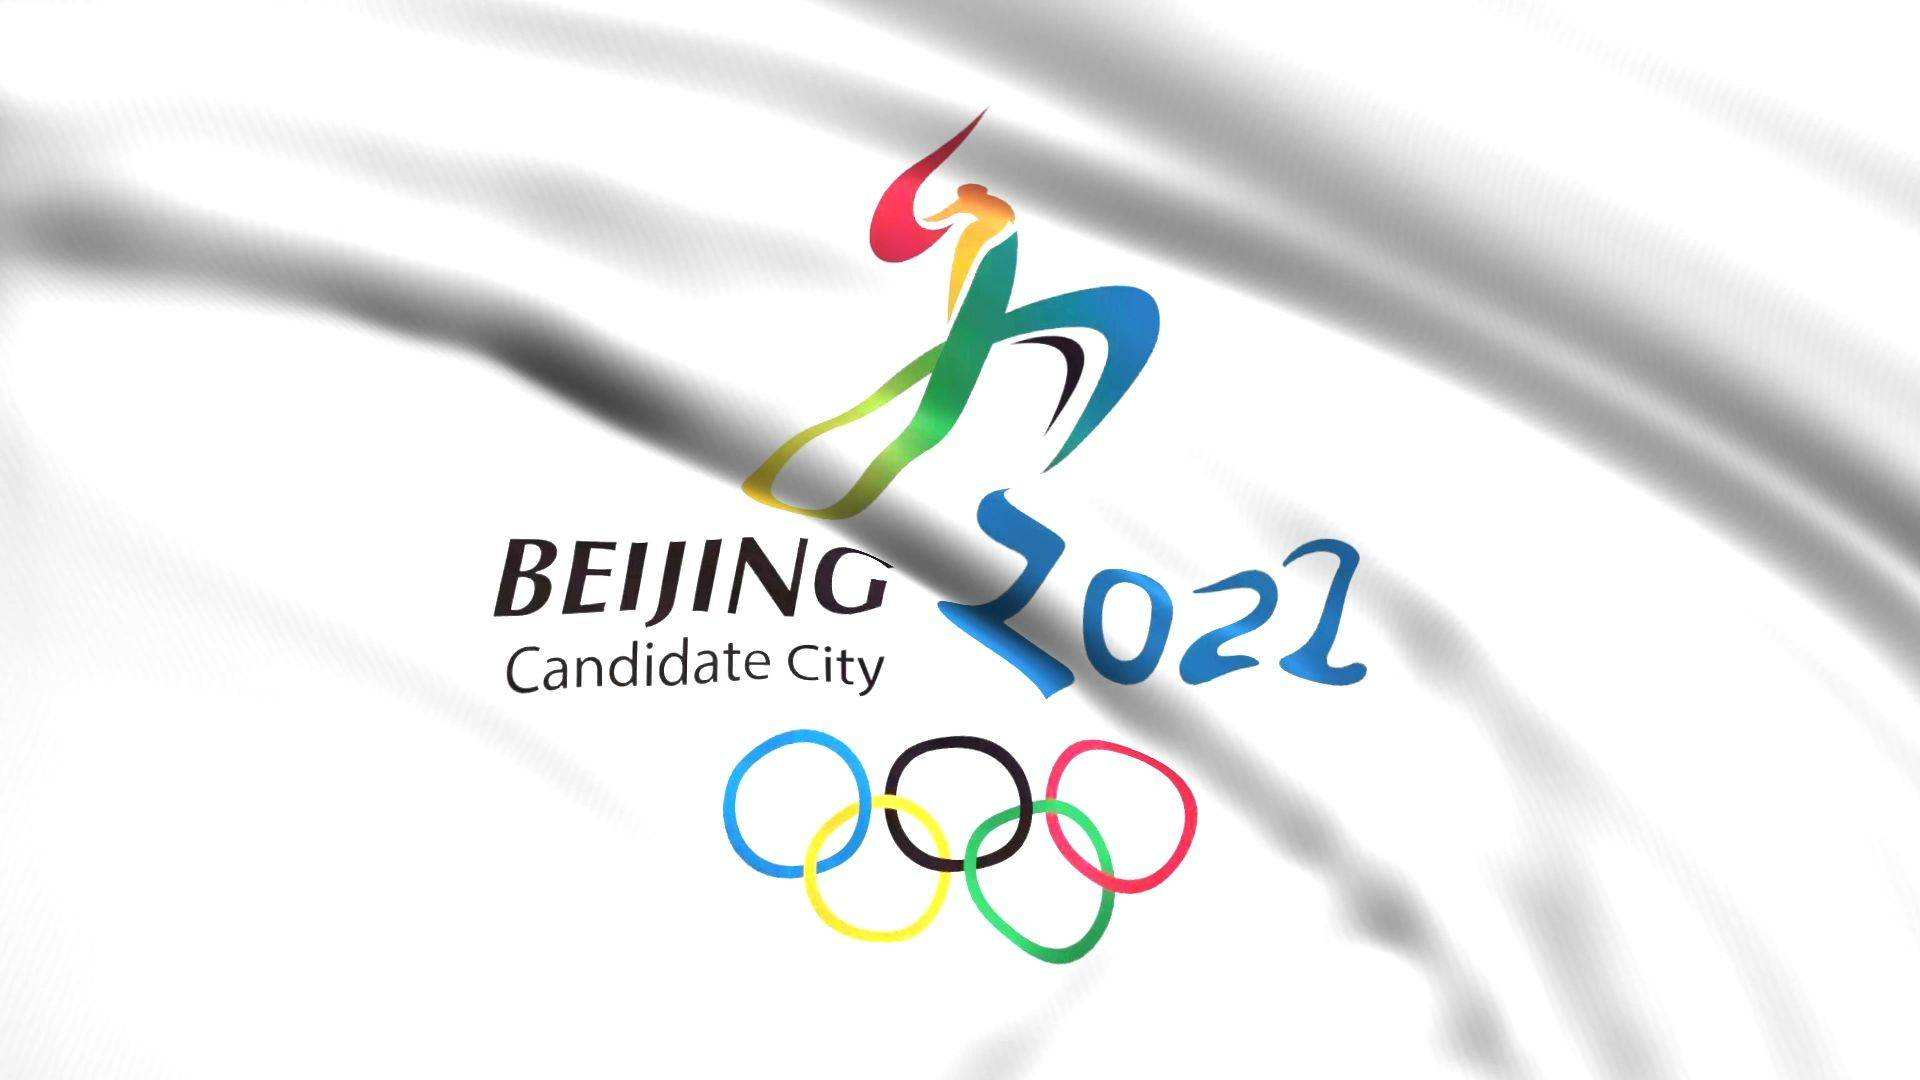 北京冬奥会logo设计图片